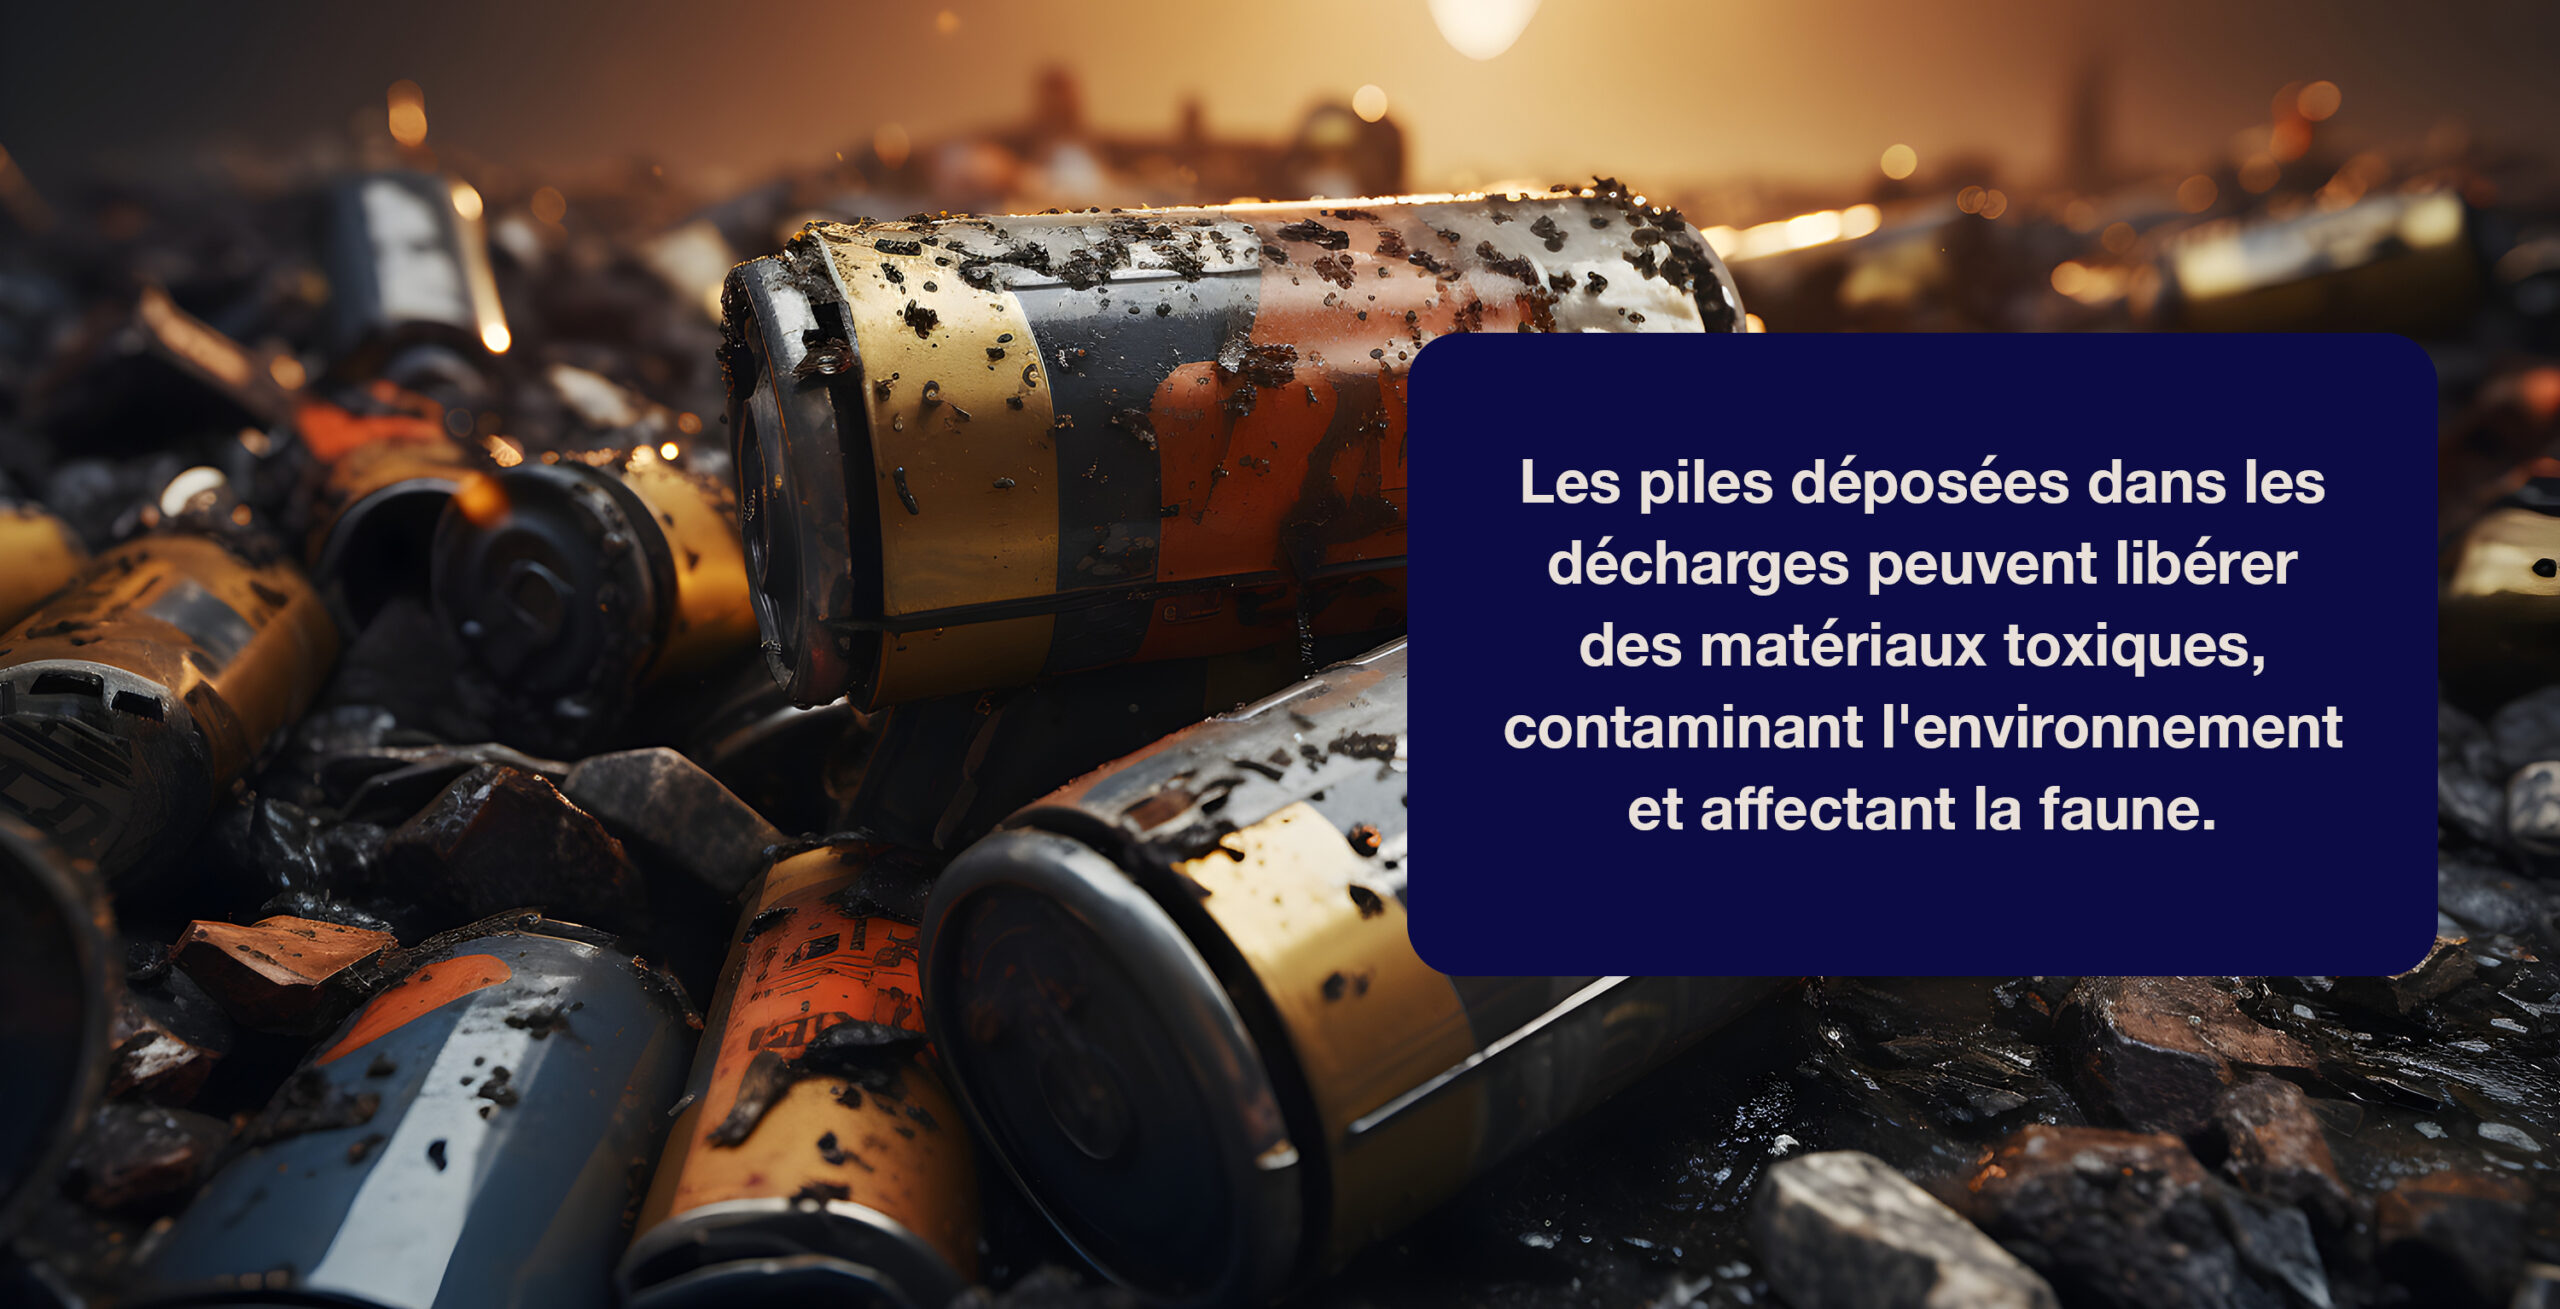 Les piles déposées dans les décharges peuvent libérer des matériaux toxiques, contaminant l'environnement et affectant la faune.